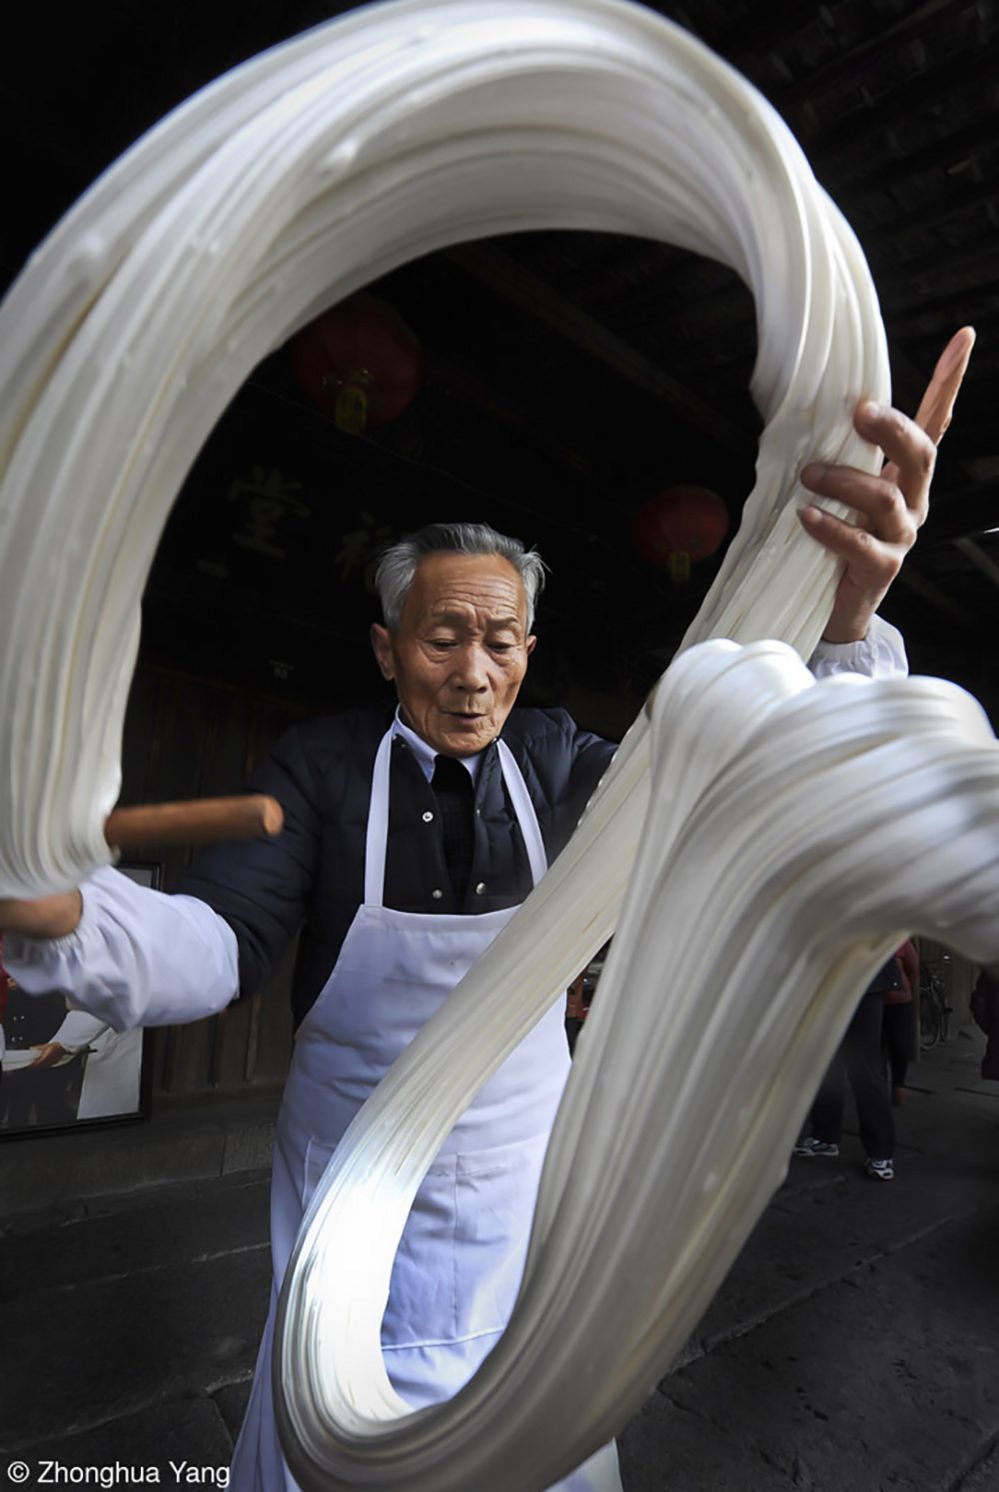 مردی در حال کشیدن شکر در آنچانگ، شائوکسینگ، چین